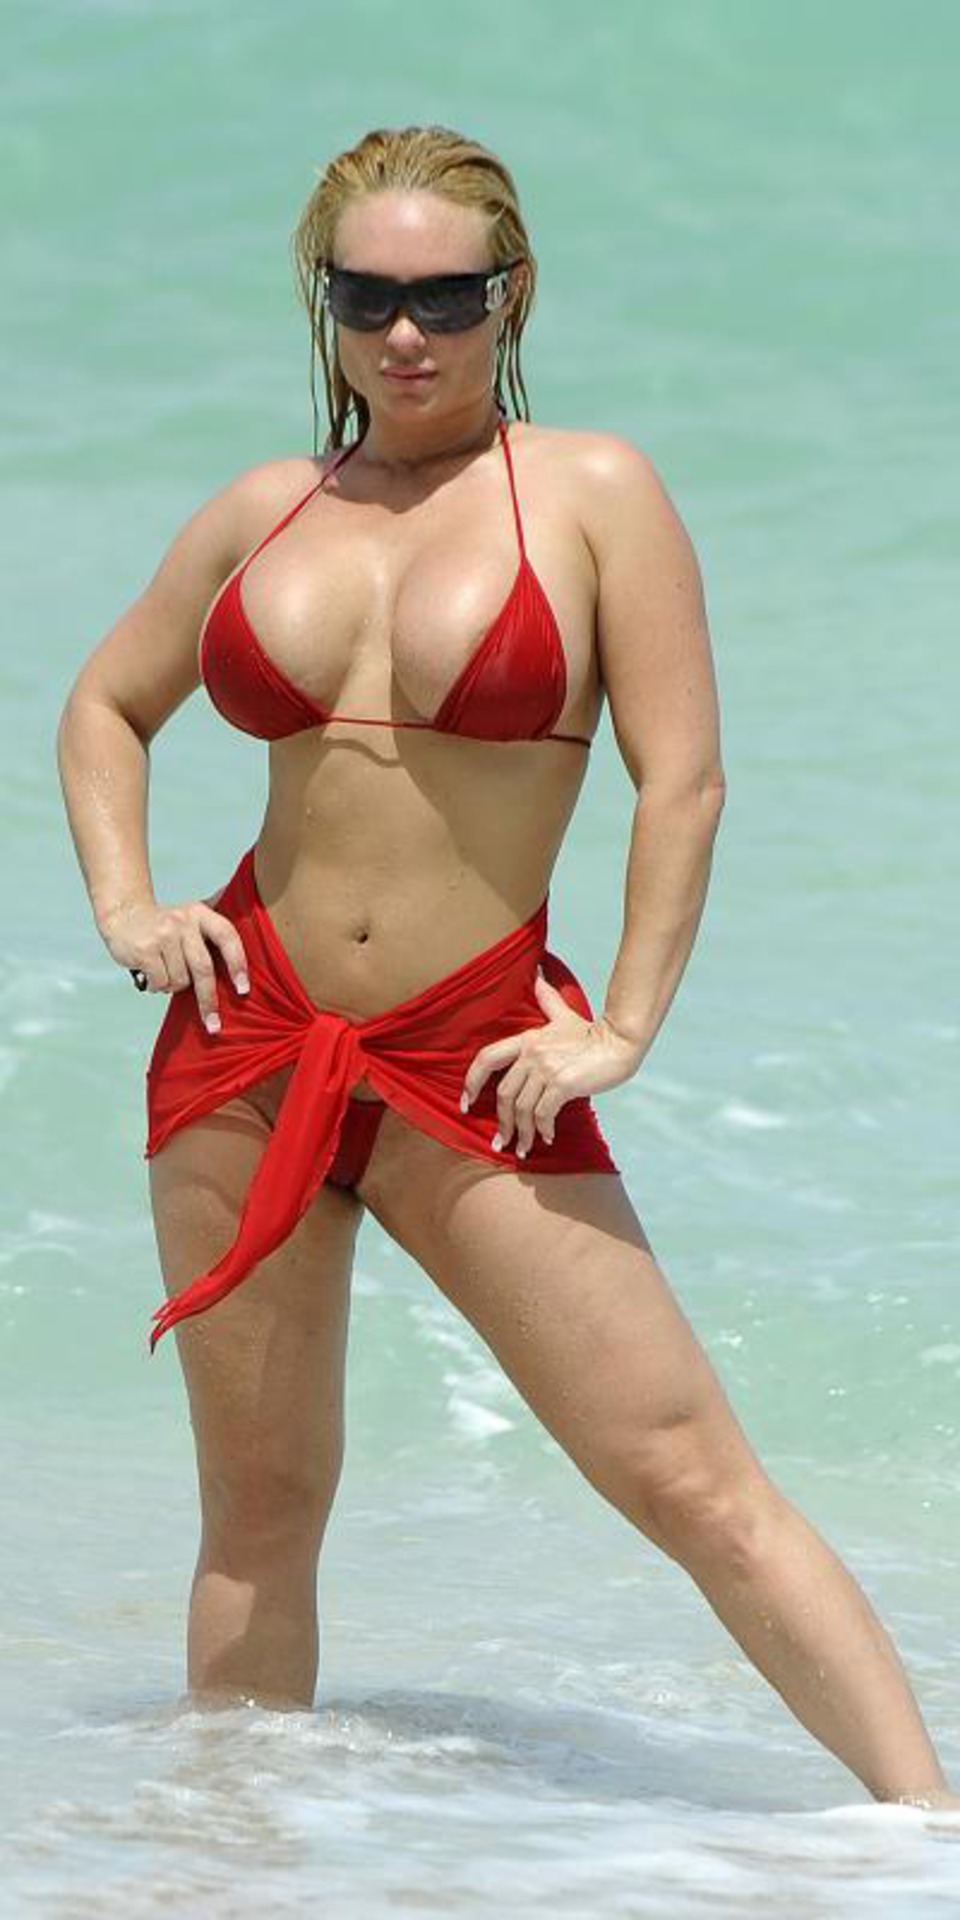 Hot curvy model Coco Austin